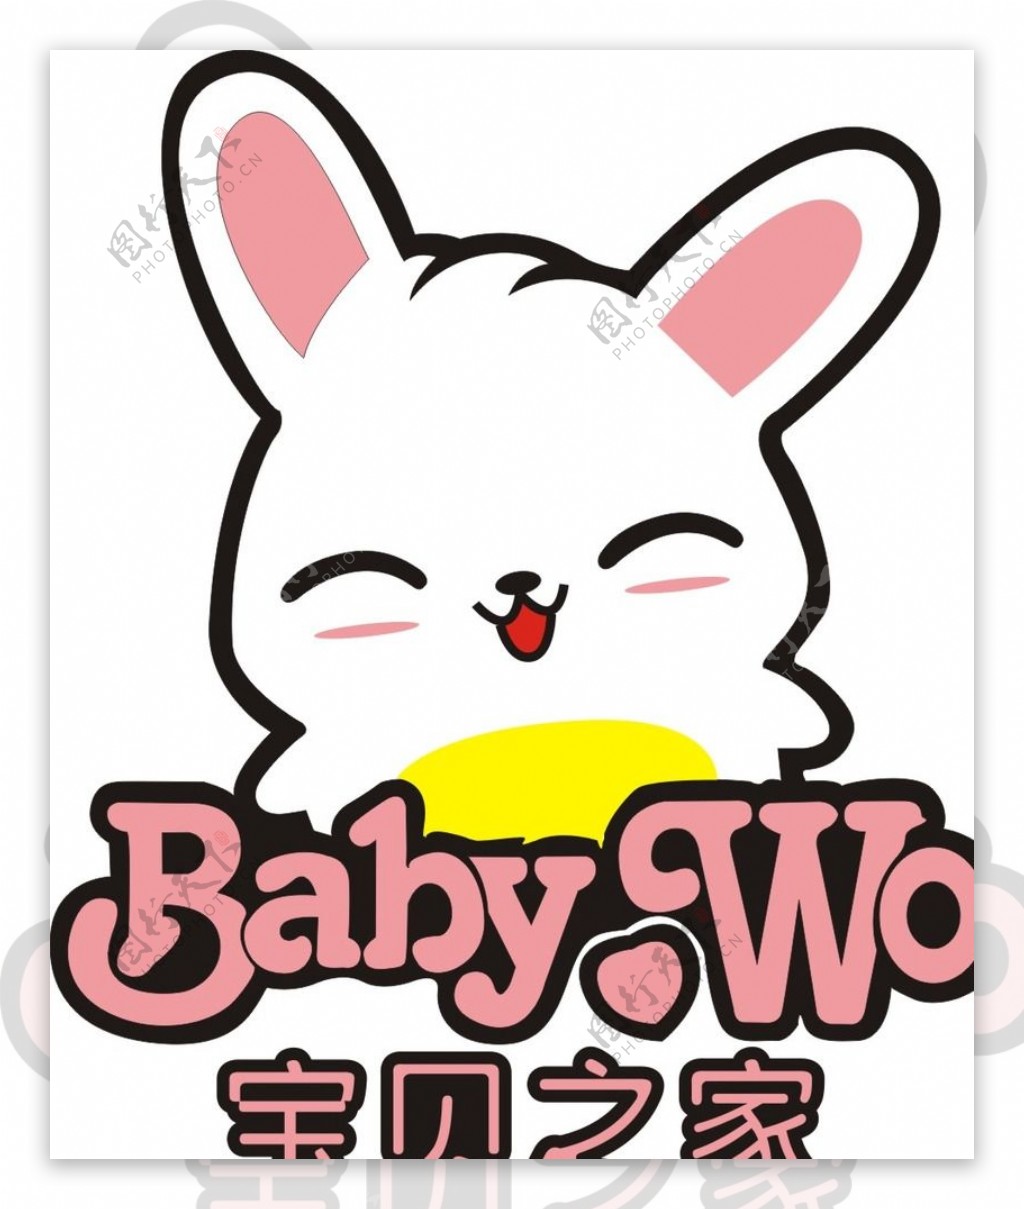 宝贝之家兔子矢量logo